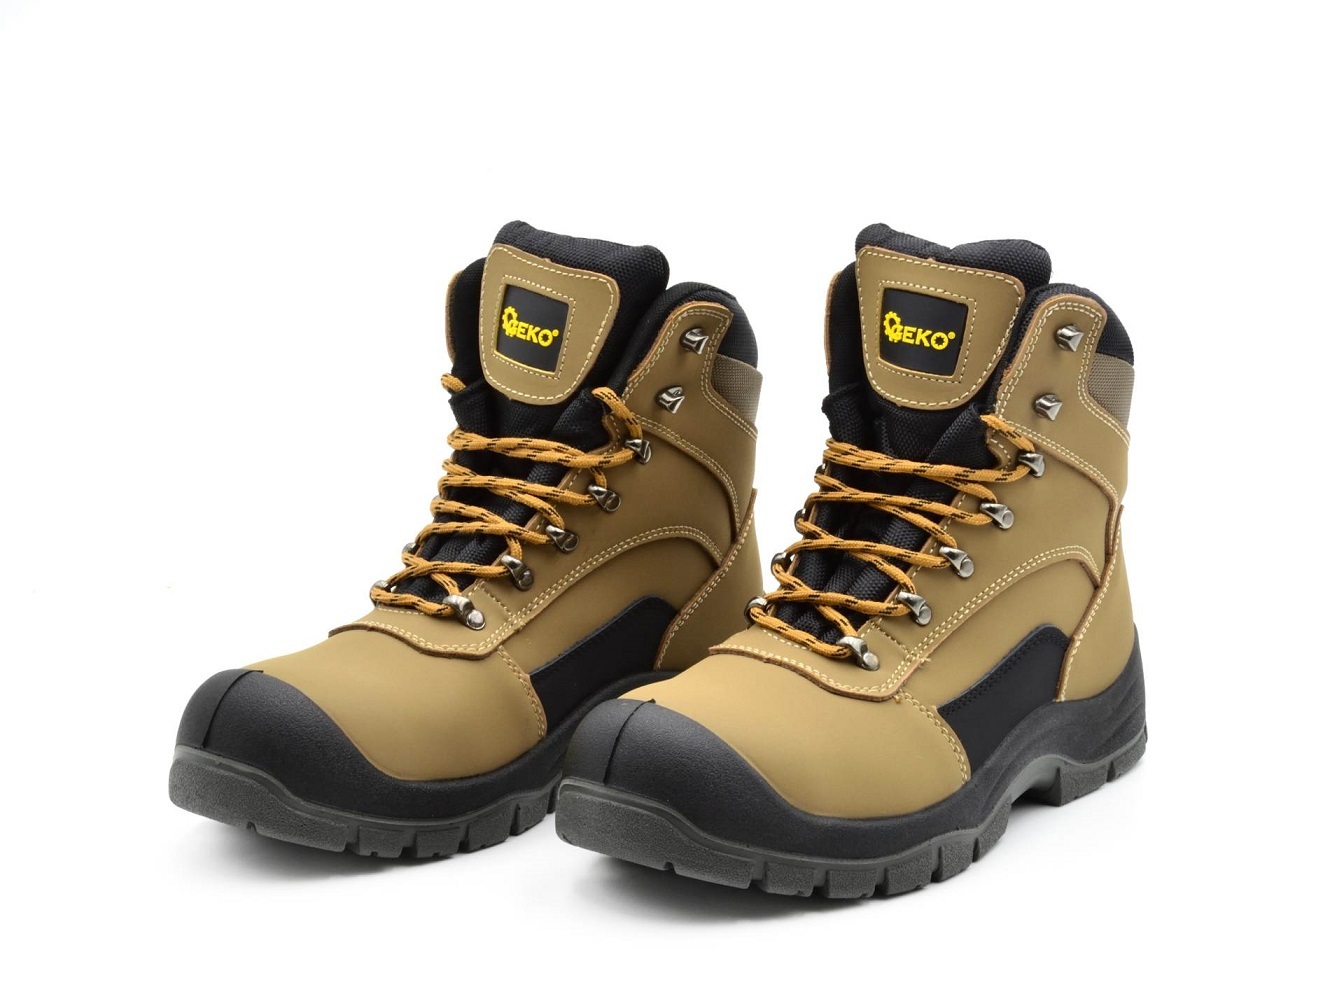 Ochranné pracovní boty velikost 41 GEKO nářadí G90541-41 + Dárek, servis bez starostí v hodnotě 300Kč